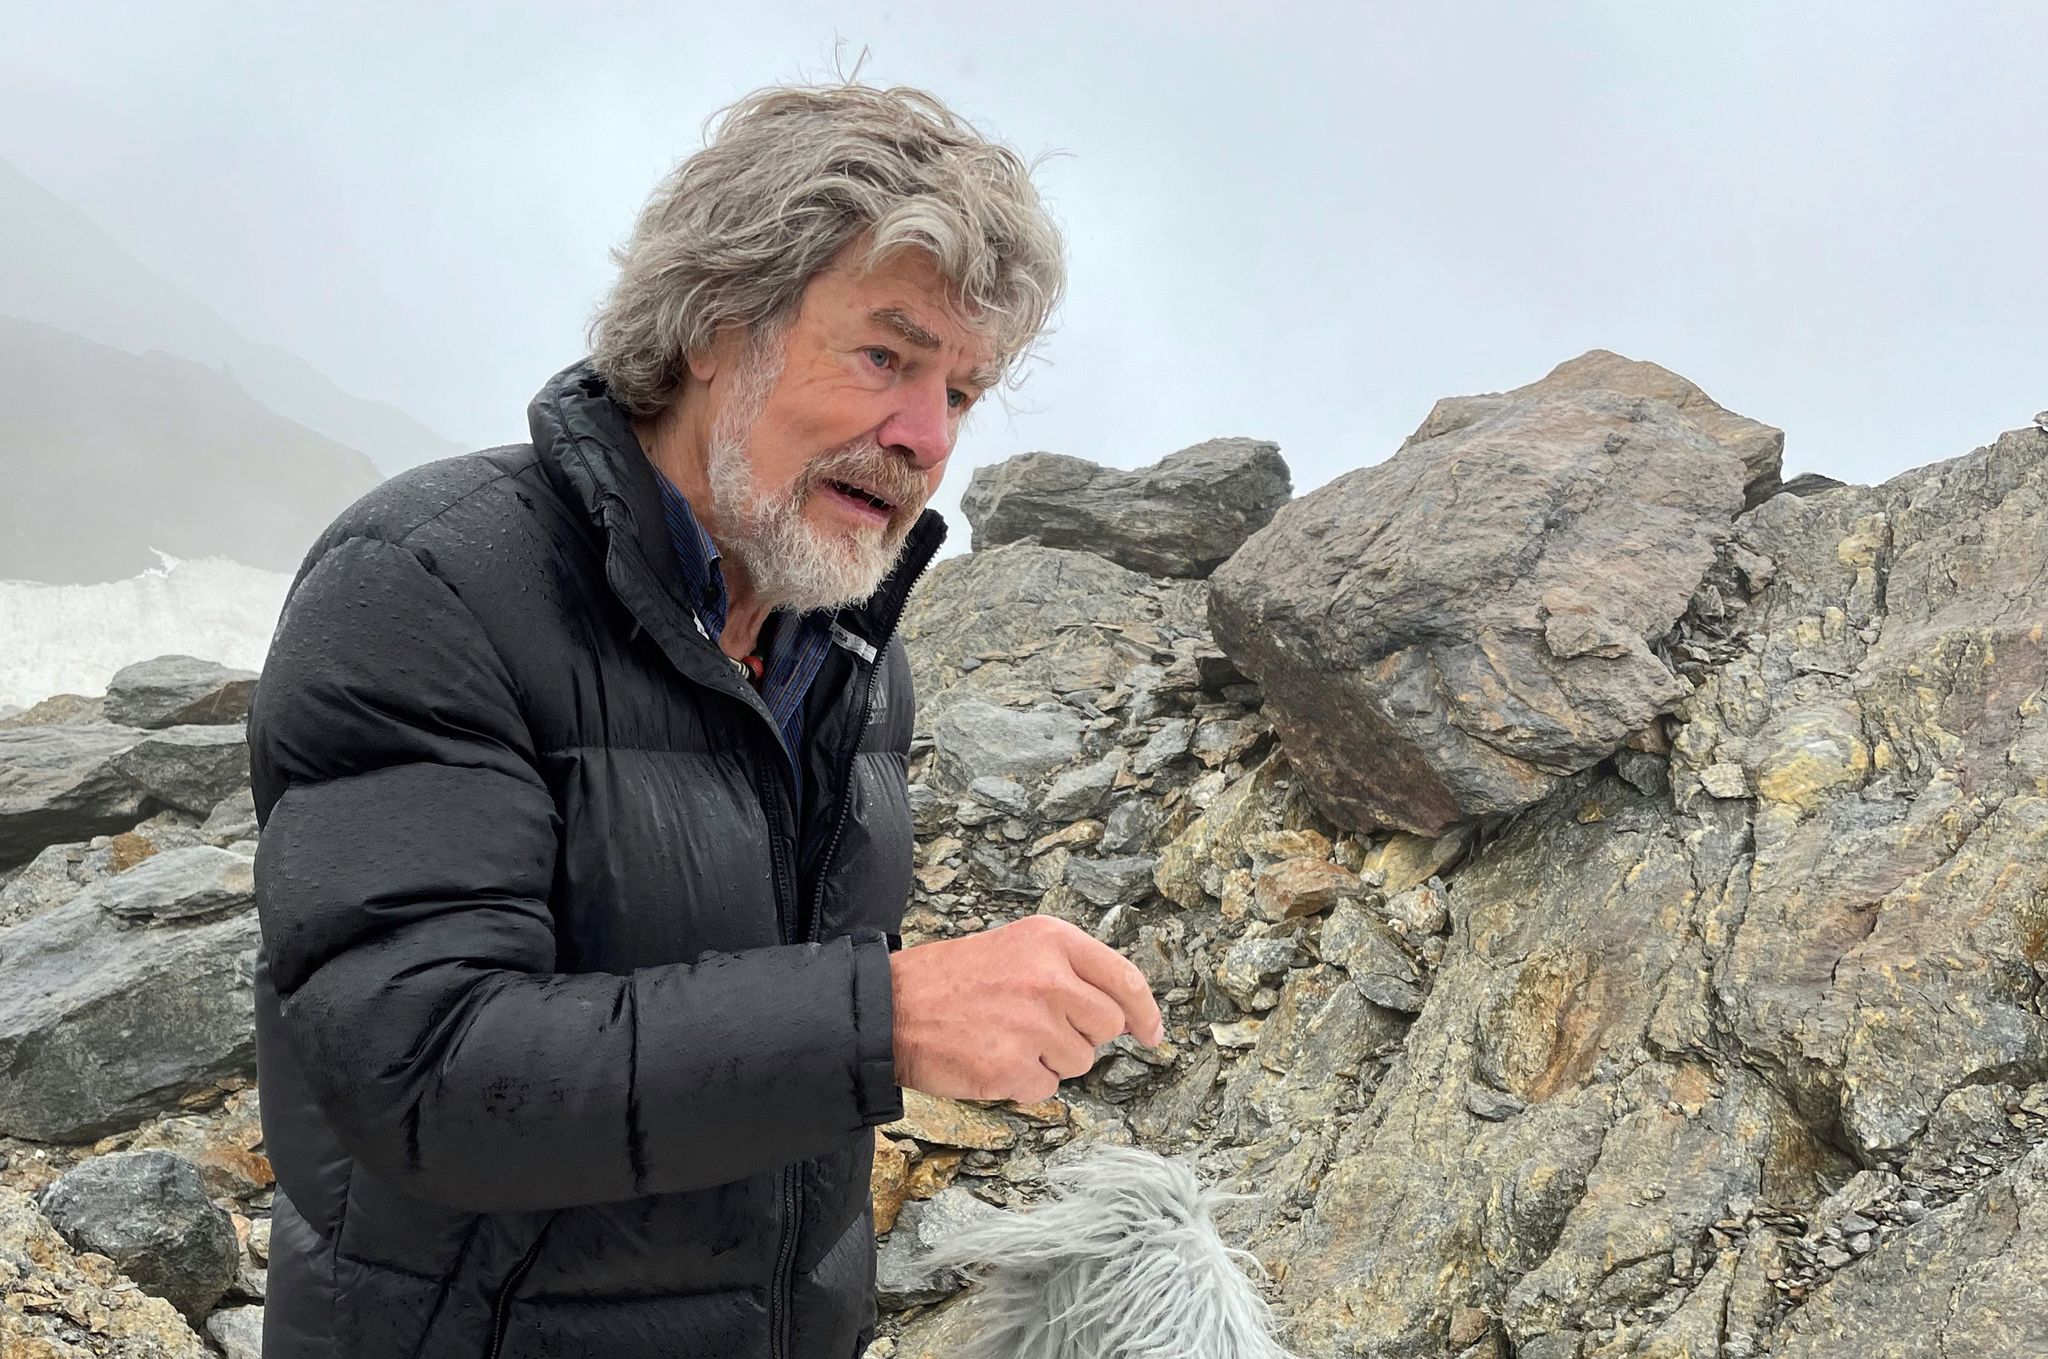 Extrem-Bergsteiger Reinhold Messner bei einem Interview am Fundort der Gletschermumie Ötzi.